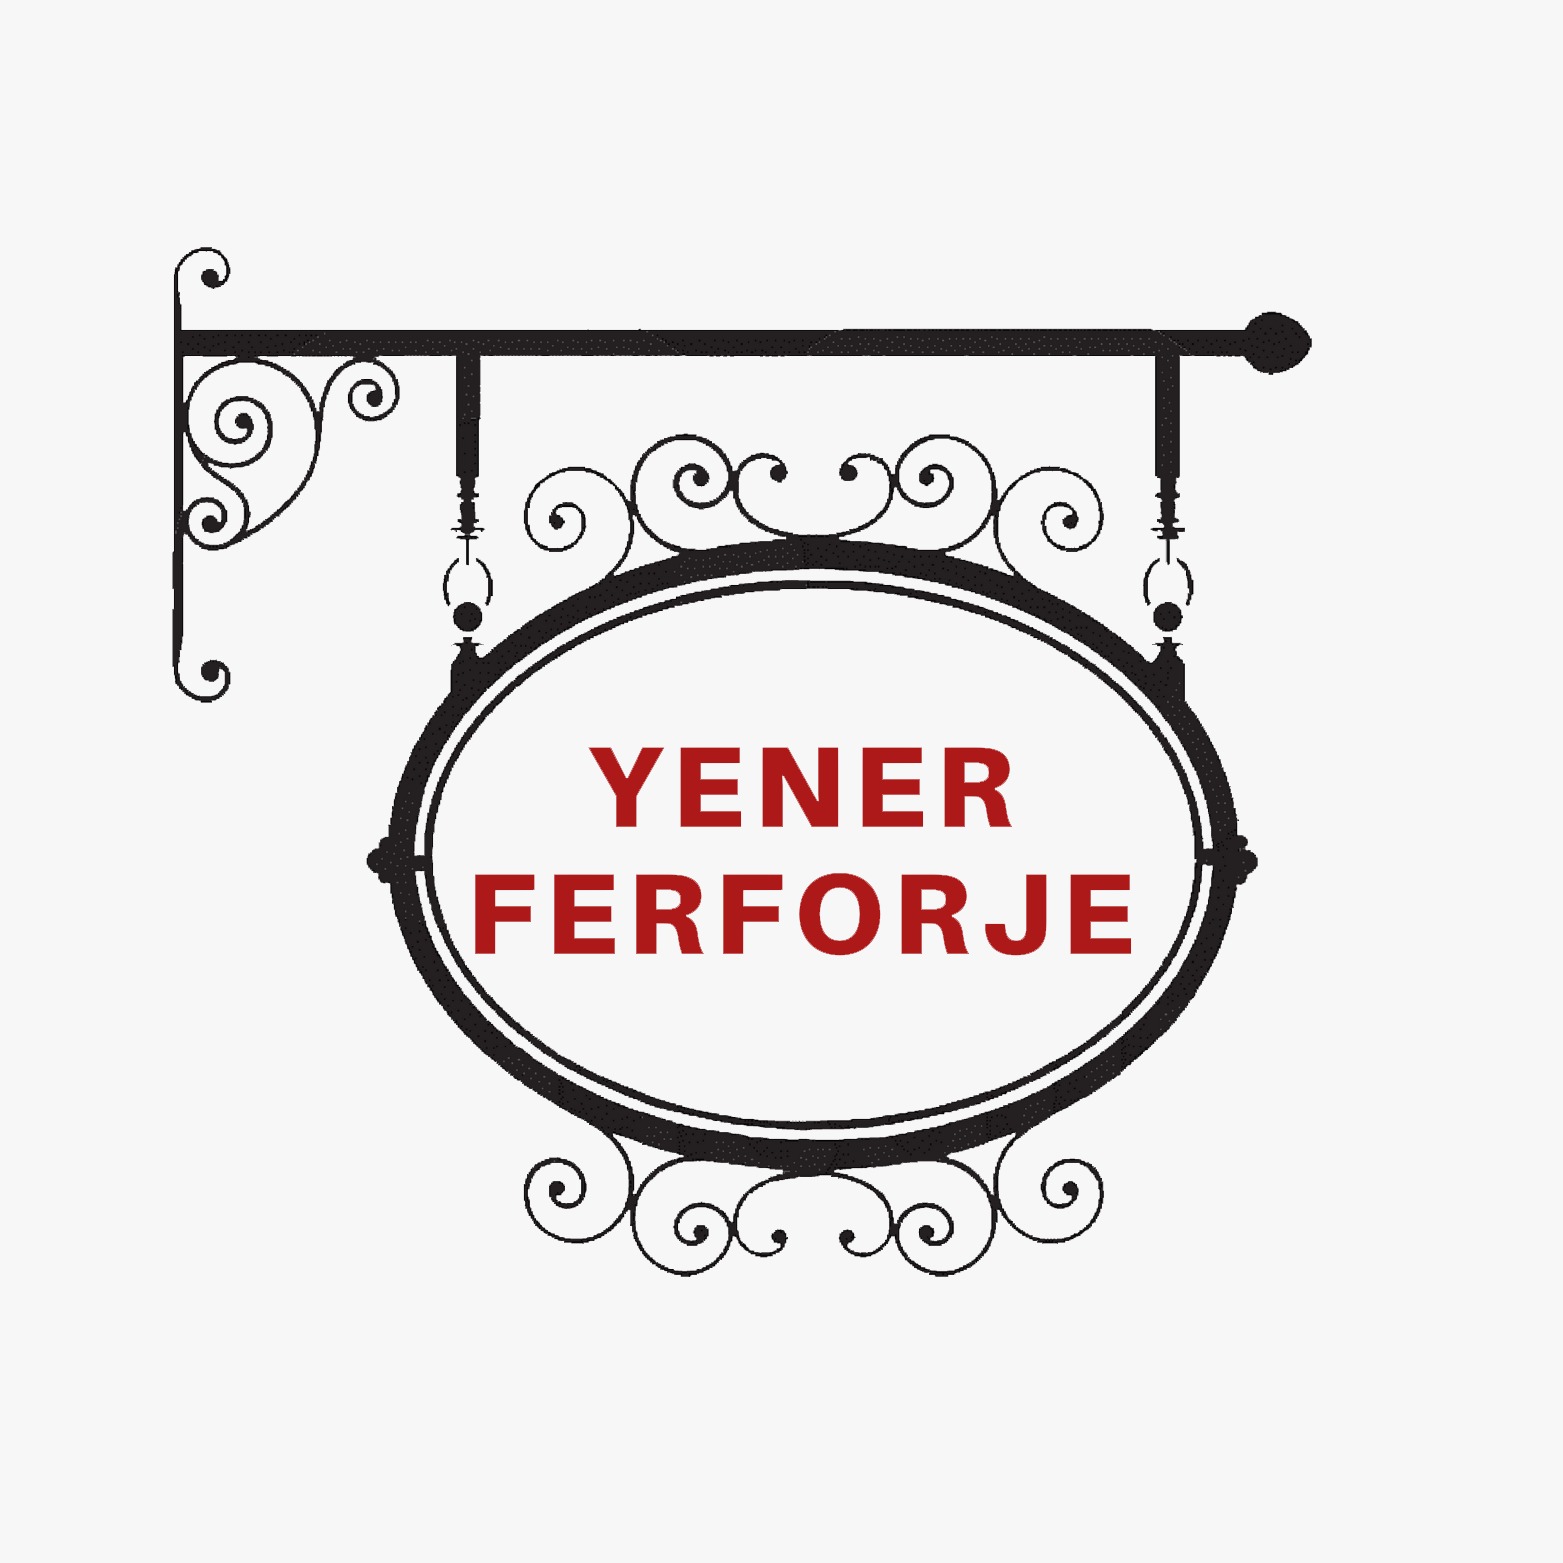 Yener Ferforje Beykoz